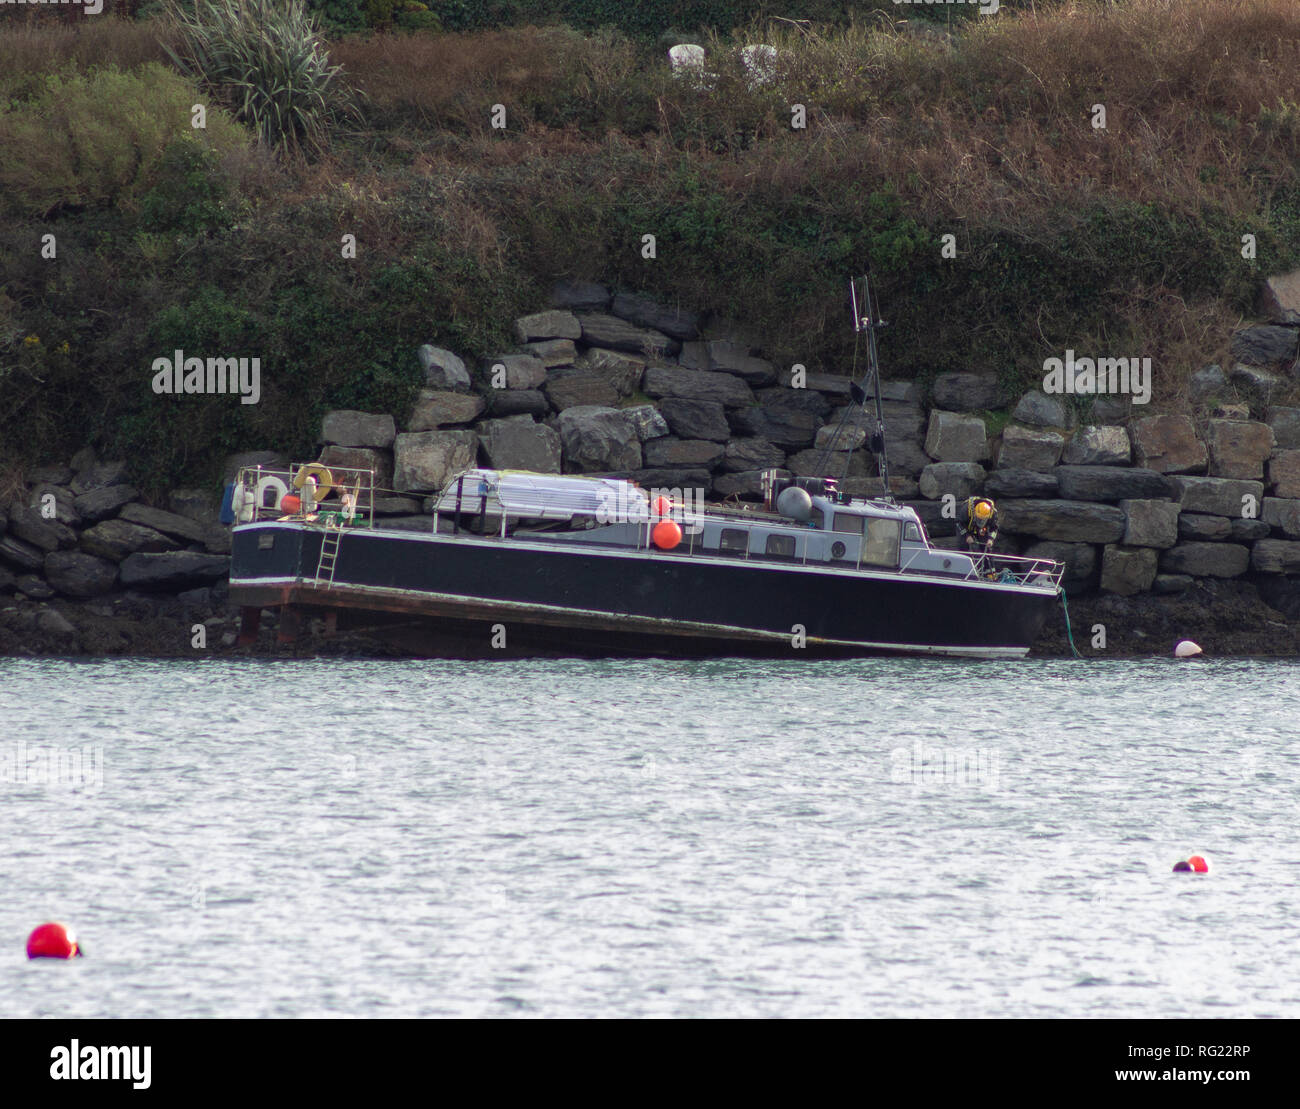 Die starken Winde der letzten Nacht fand die MV Sea Tracker auf den Felsen in Castlehaven Hafen lief heute Morgen. Der hölzerne geschält Schiff war schnell auf einer Ebbe stecken, die irische Küstenwache sind anwesend und keine Verletzten gemeldet. Credit: aphperspective/Alamy leben Nachrichten Stockfoto